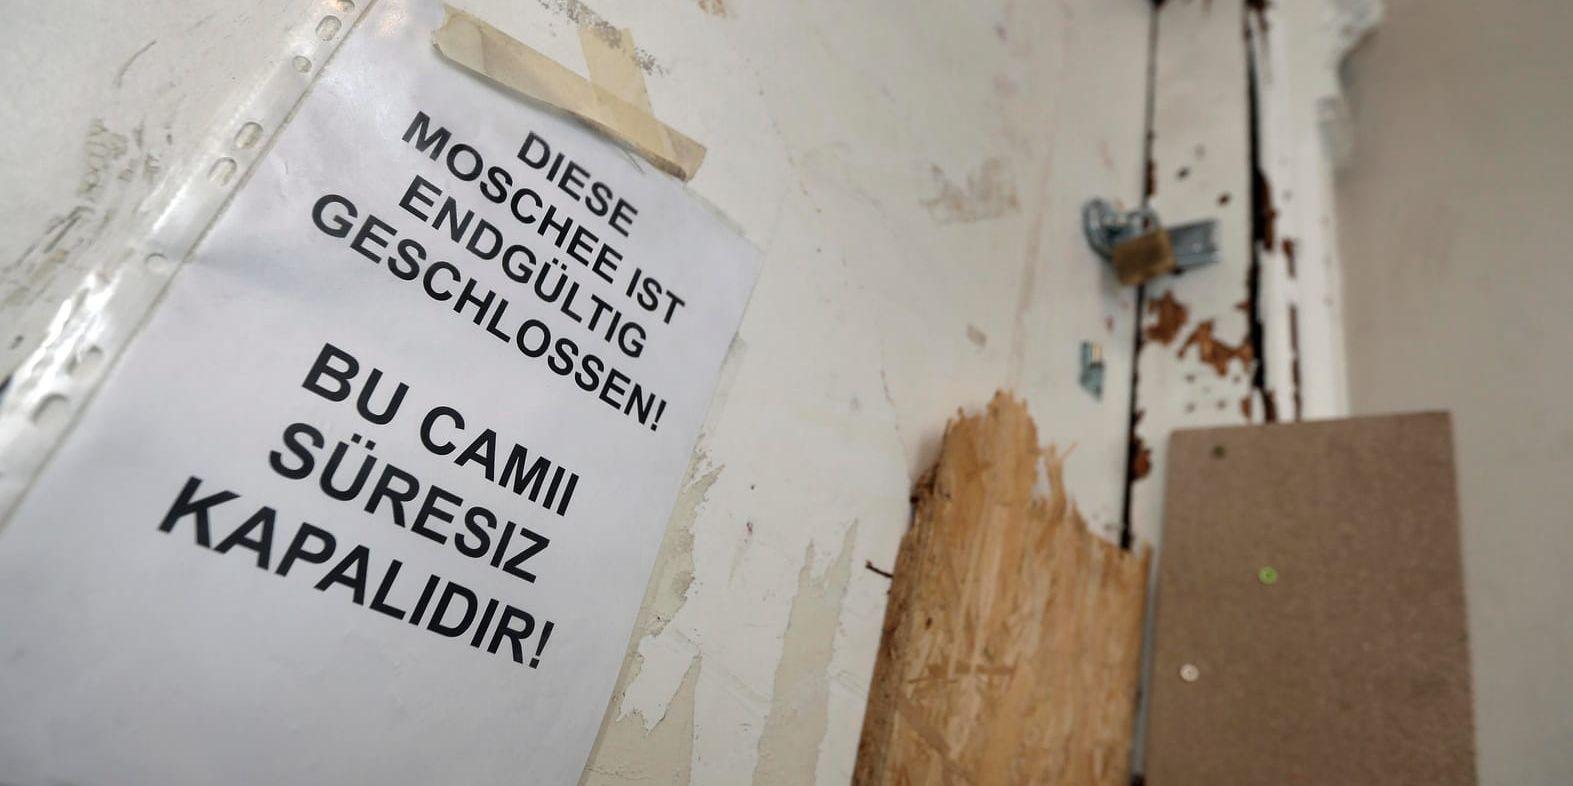 Den igenbommade dörren till Fussiletmoskén i Berlin, som stängdes av myndigheterna i februari 2017. Moskén besöktes bland annat av Anis Amri, som dödade tolv personer då han kapade en lastbil och plöjde in i en folksamling på en julmarknad i Berlin i december 2016.